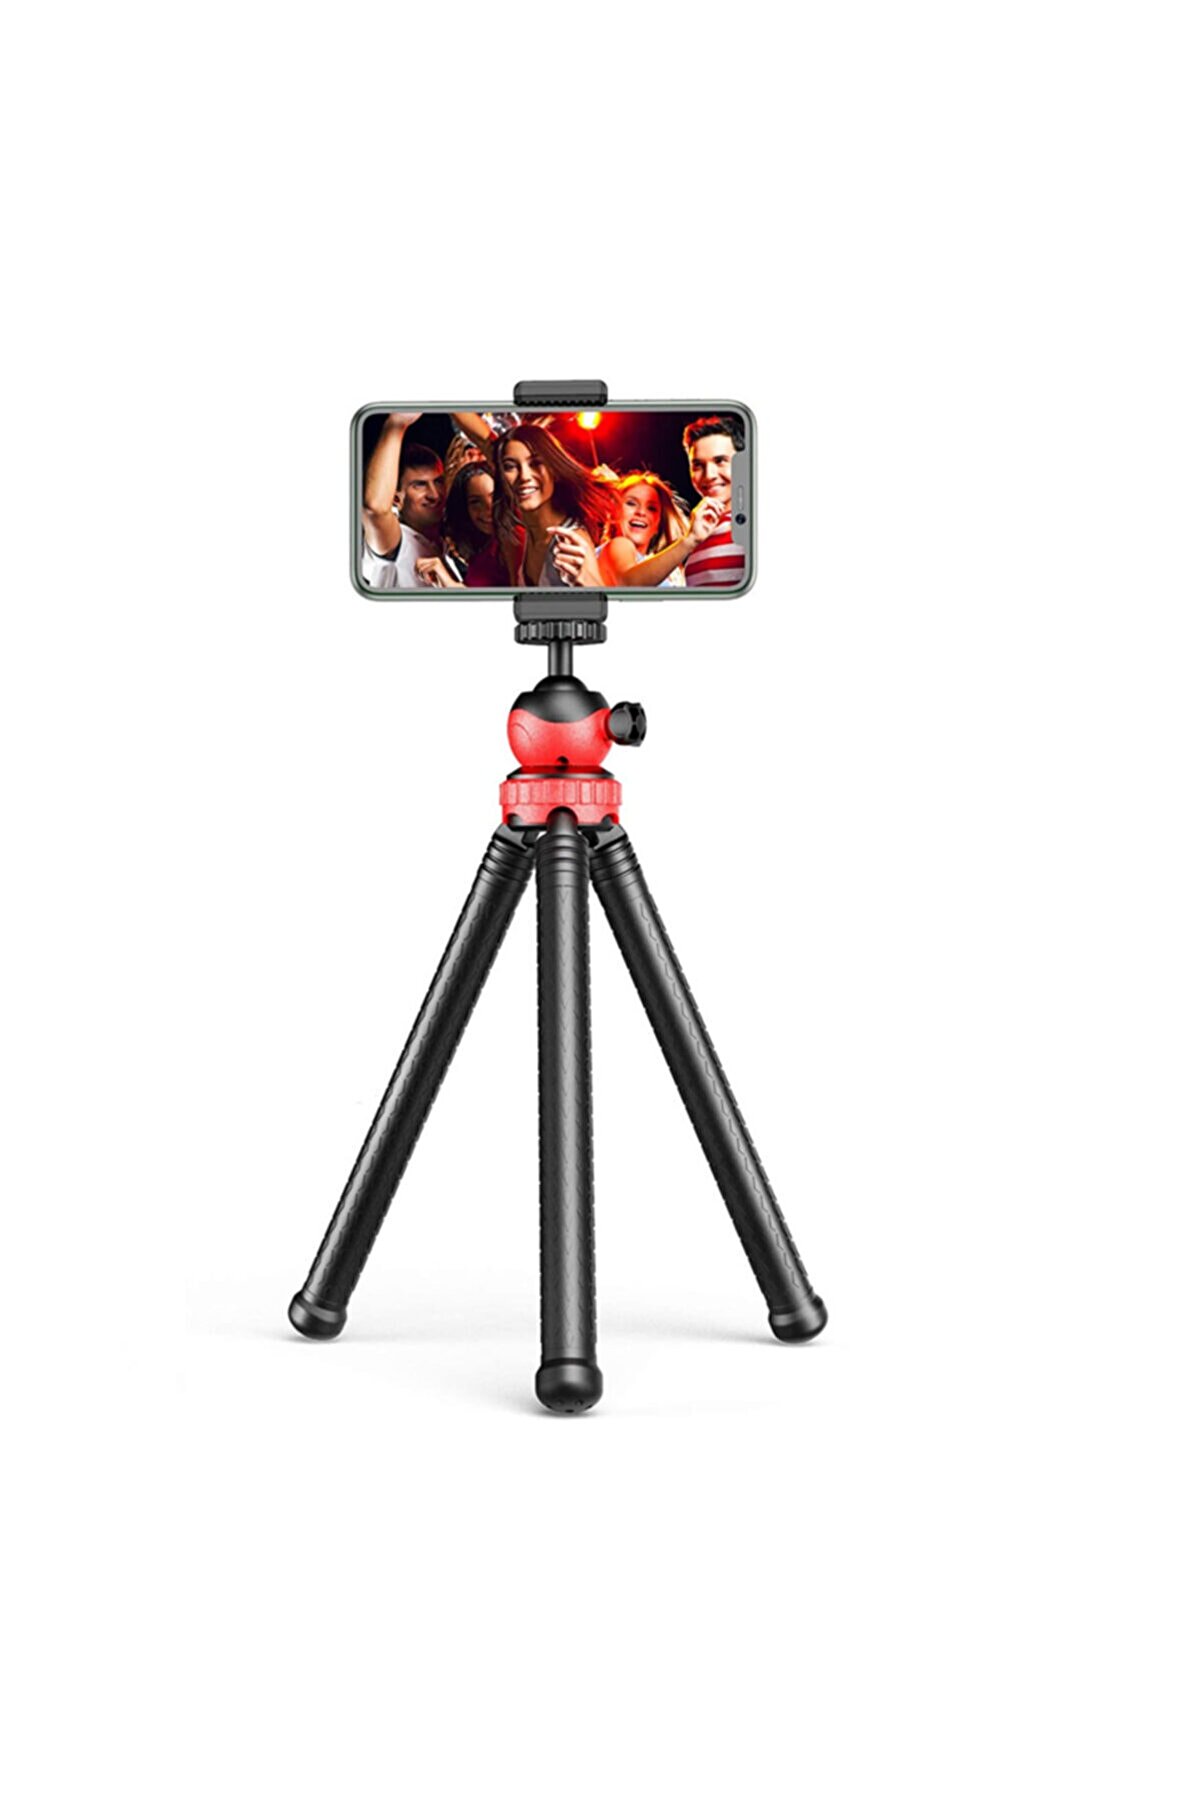 GFUZ Profesyonel Fotoğraf Ve Video Çekimi Tripot Telefon Tutucu Esnek 360° Açılı Youtuber Tripodu